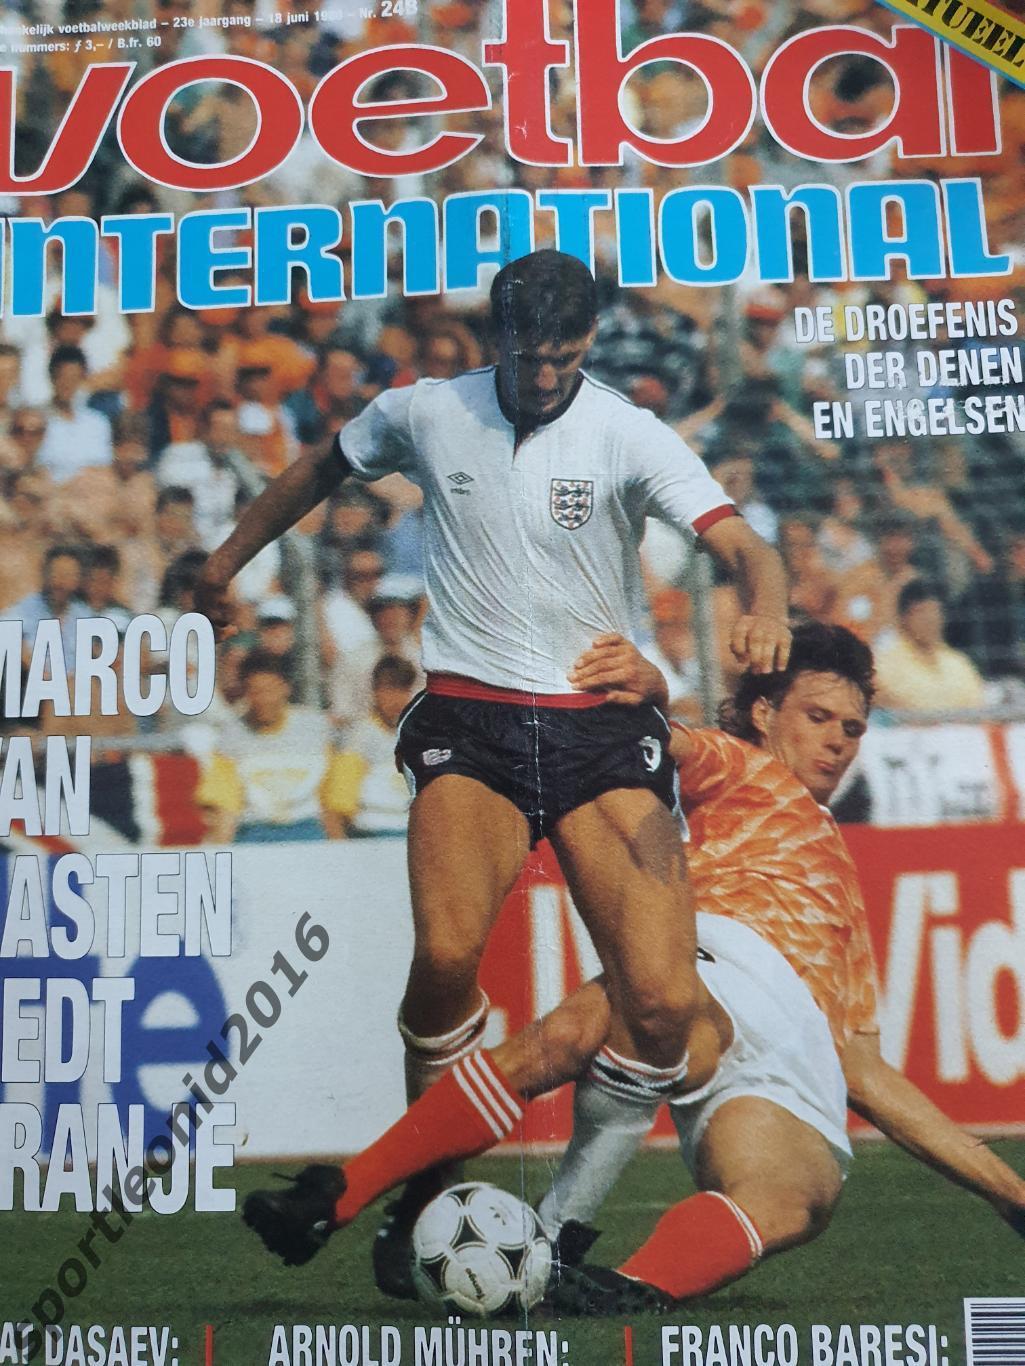 Voetbal International 1988.Годовая подписка.52 номера +4 спецвыпуска к Евро-88.6 6